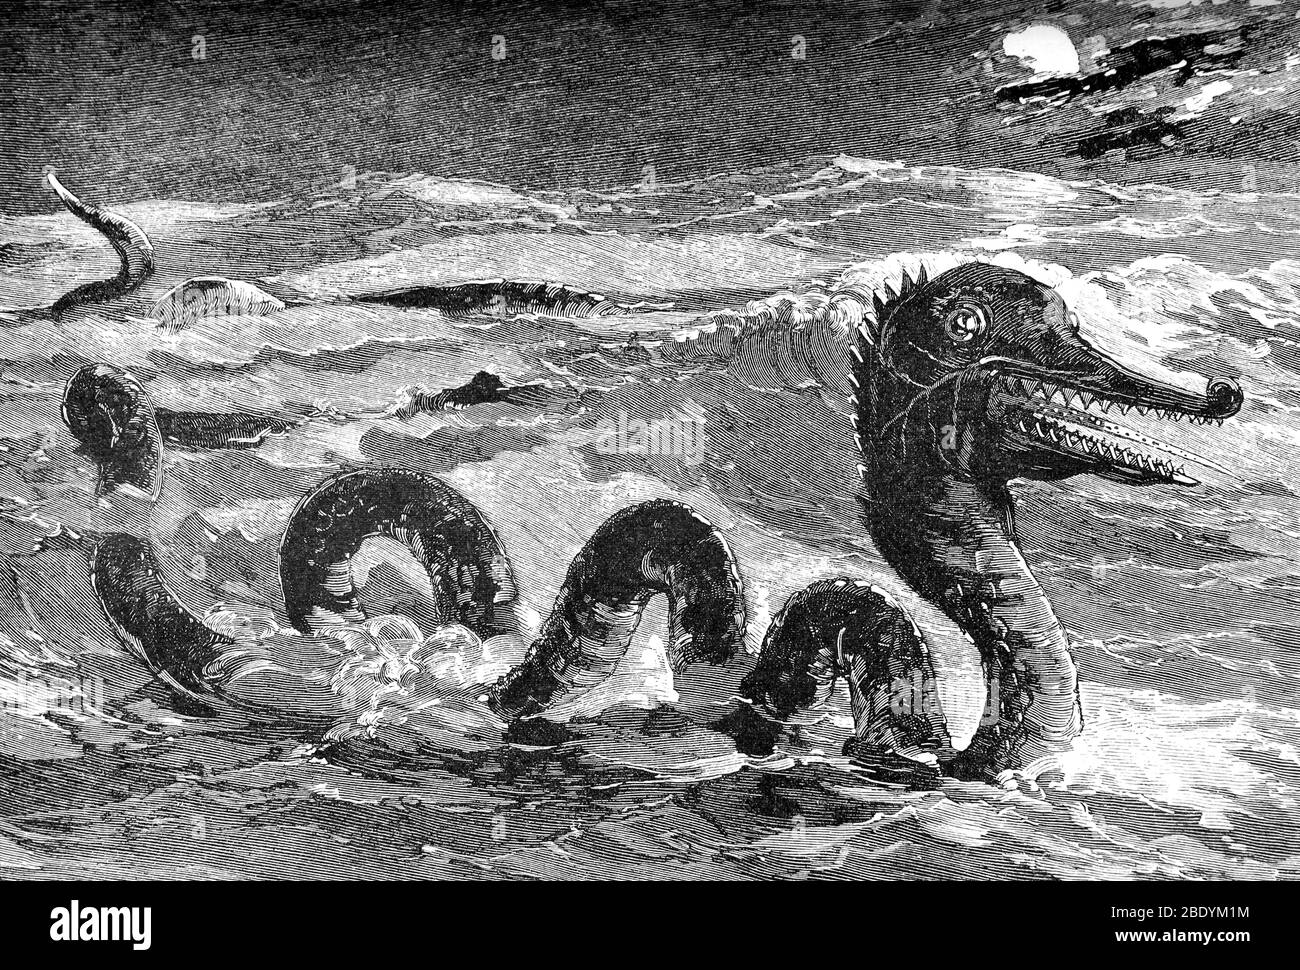 Serpiente de mar, monstruo legendario Foto de stock